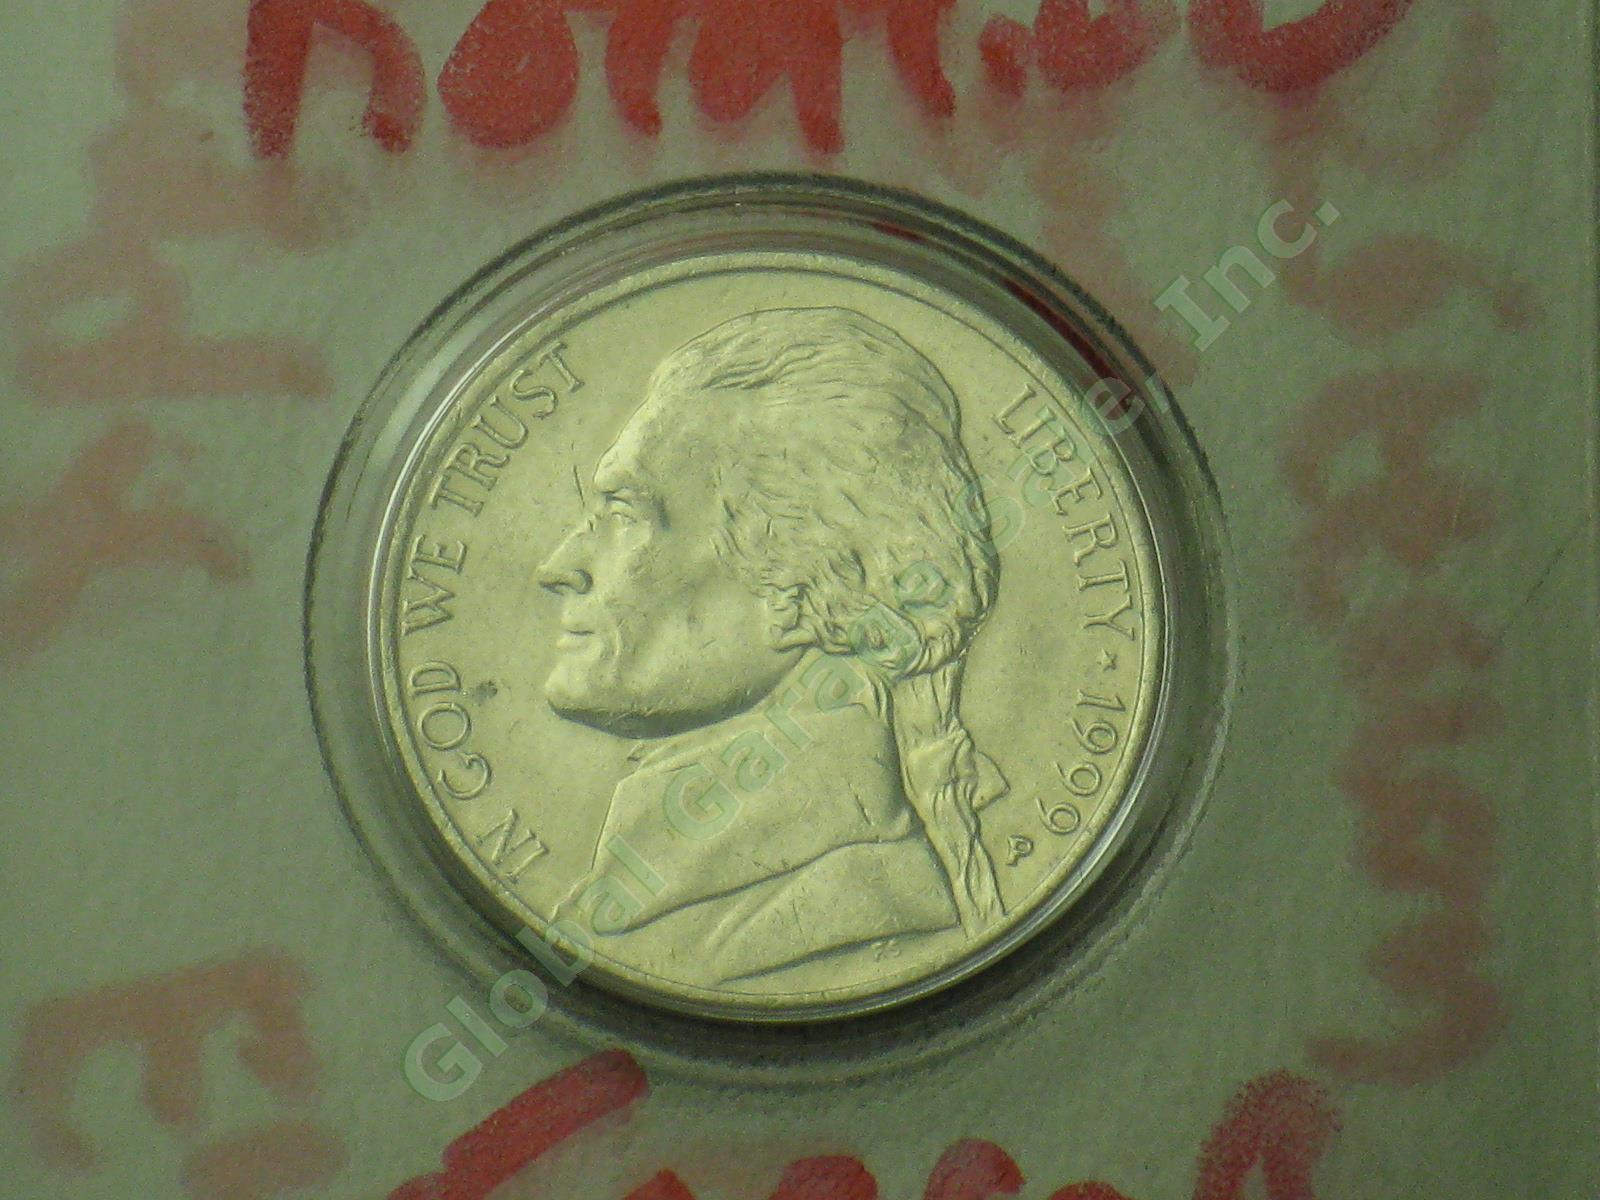 19 Jefferson Nickel Mint Errors Lot 1990s 2000s UNC Doubling Die Chips Blank ++ 7